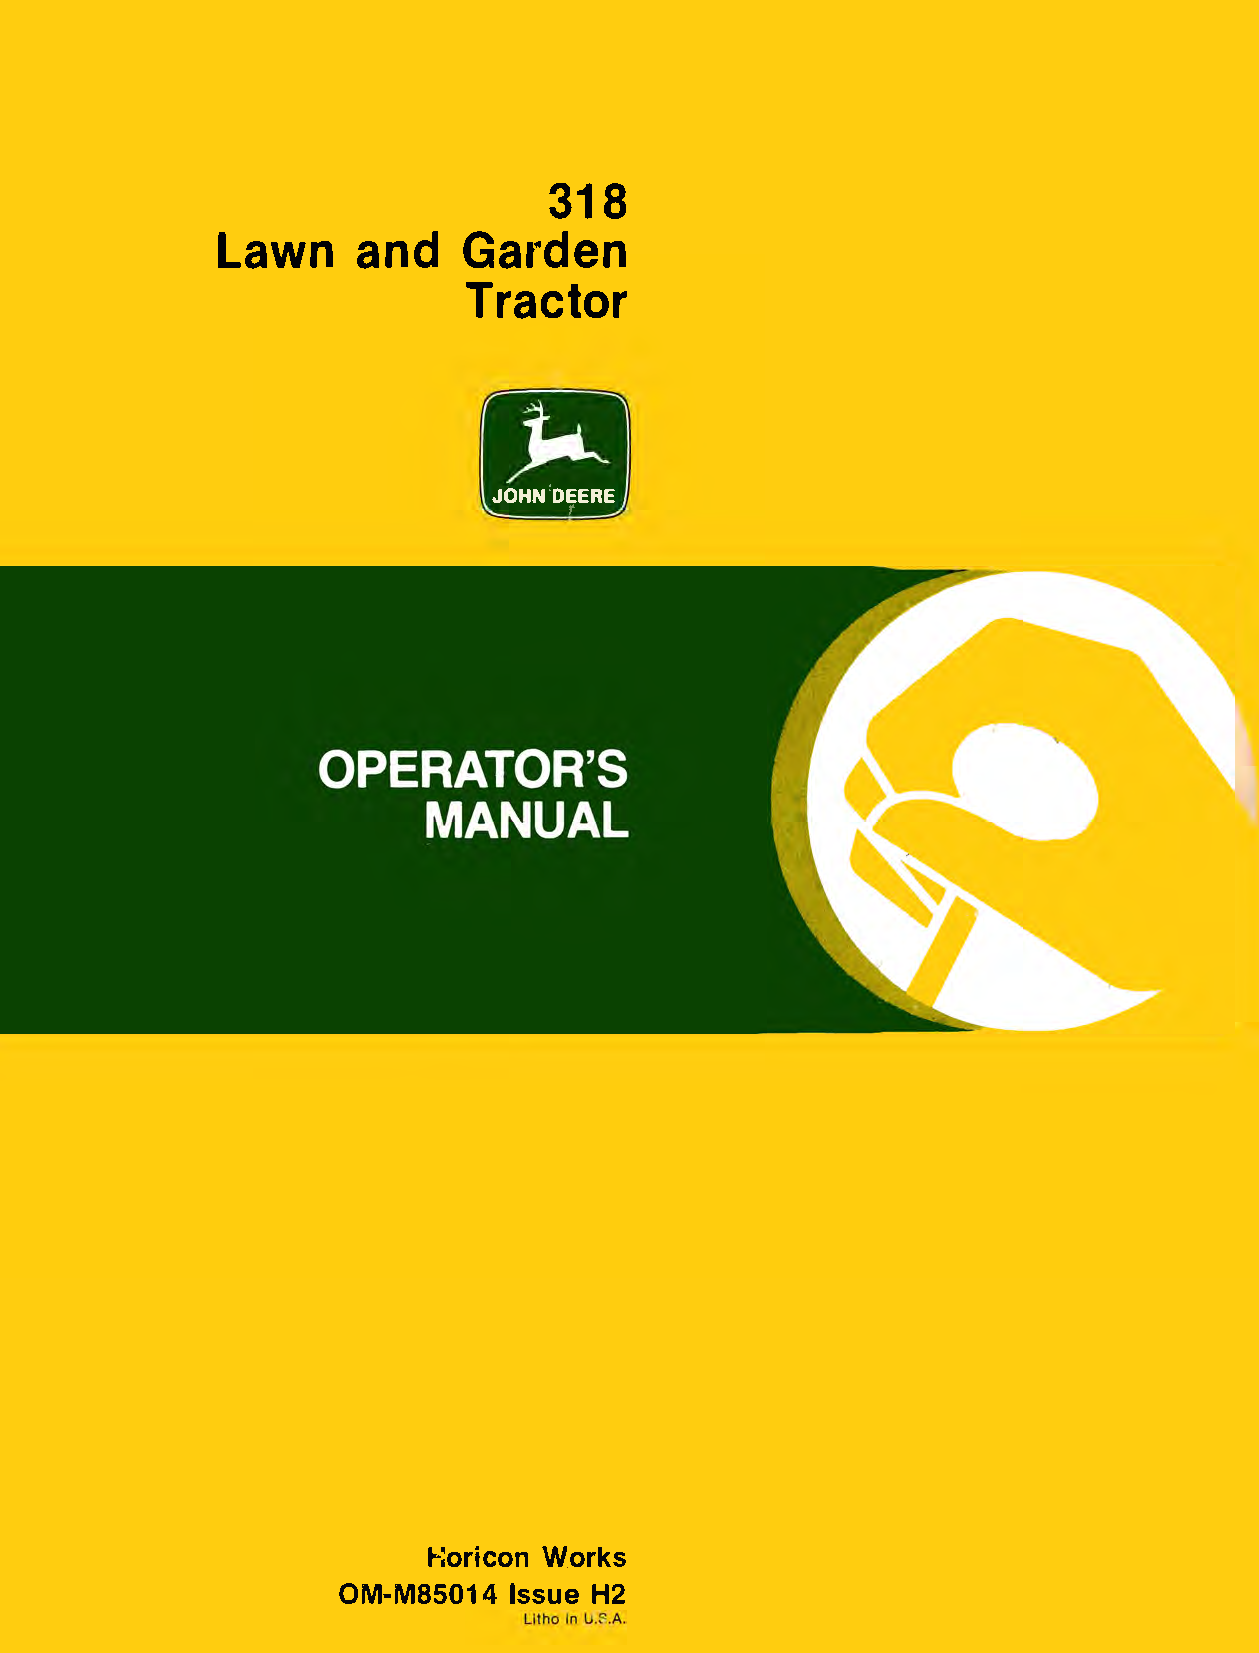 John Deere 318 Lawn and Garden Tractors Operator's Manual